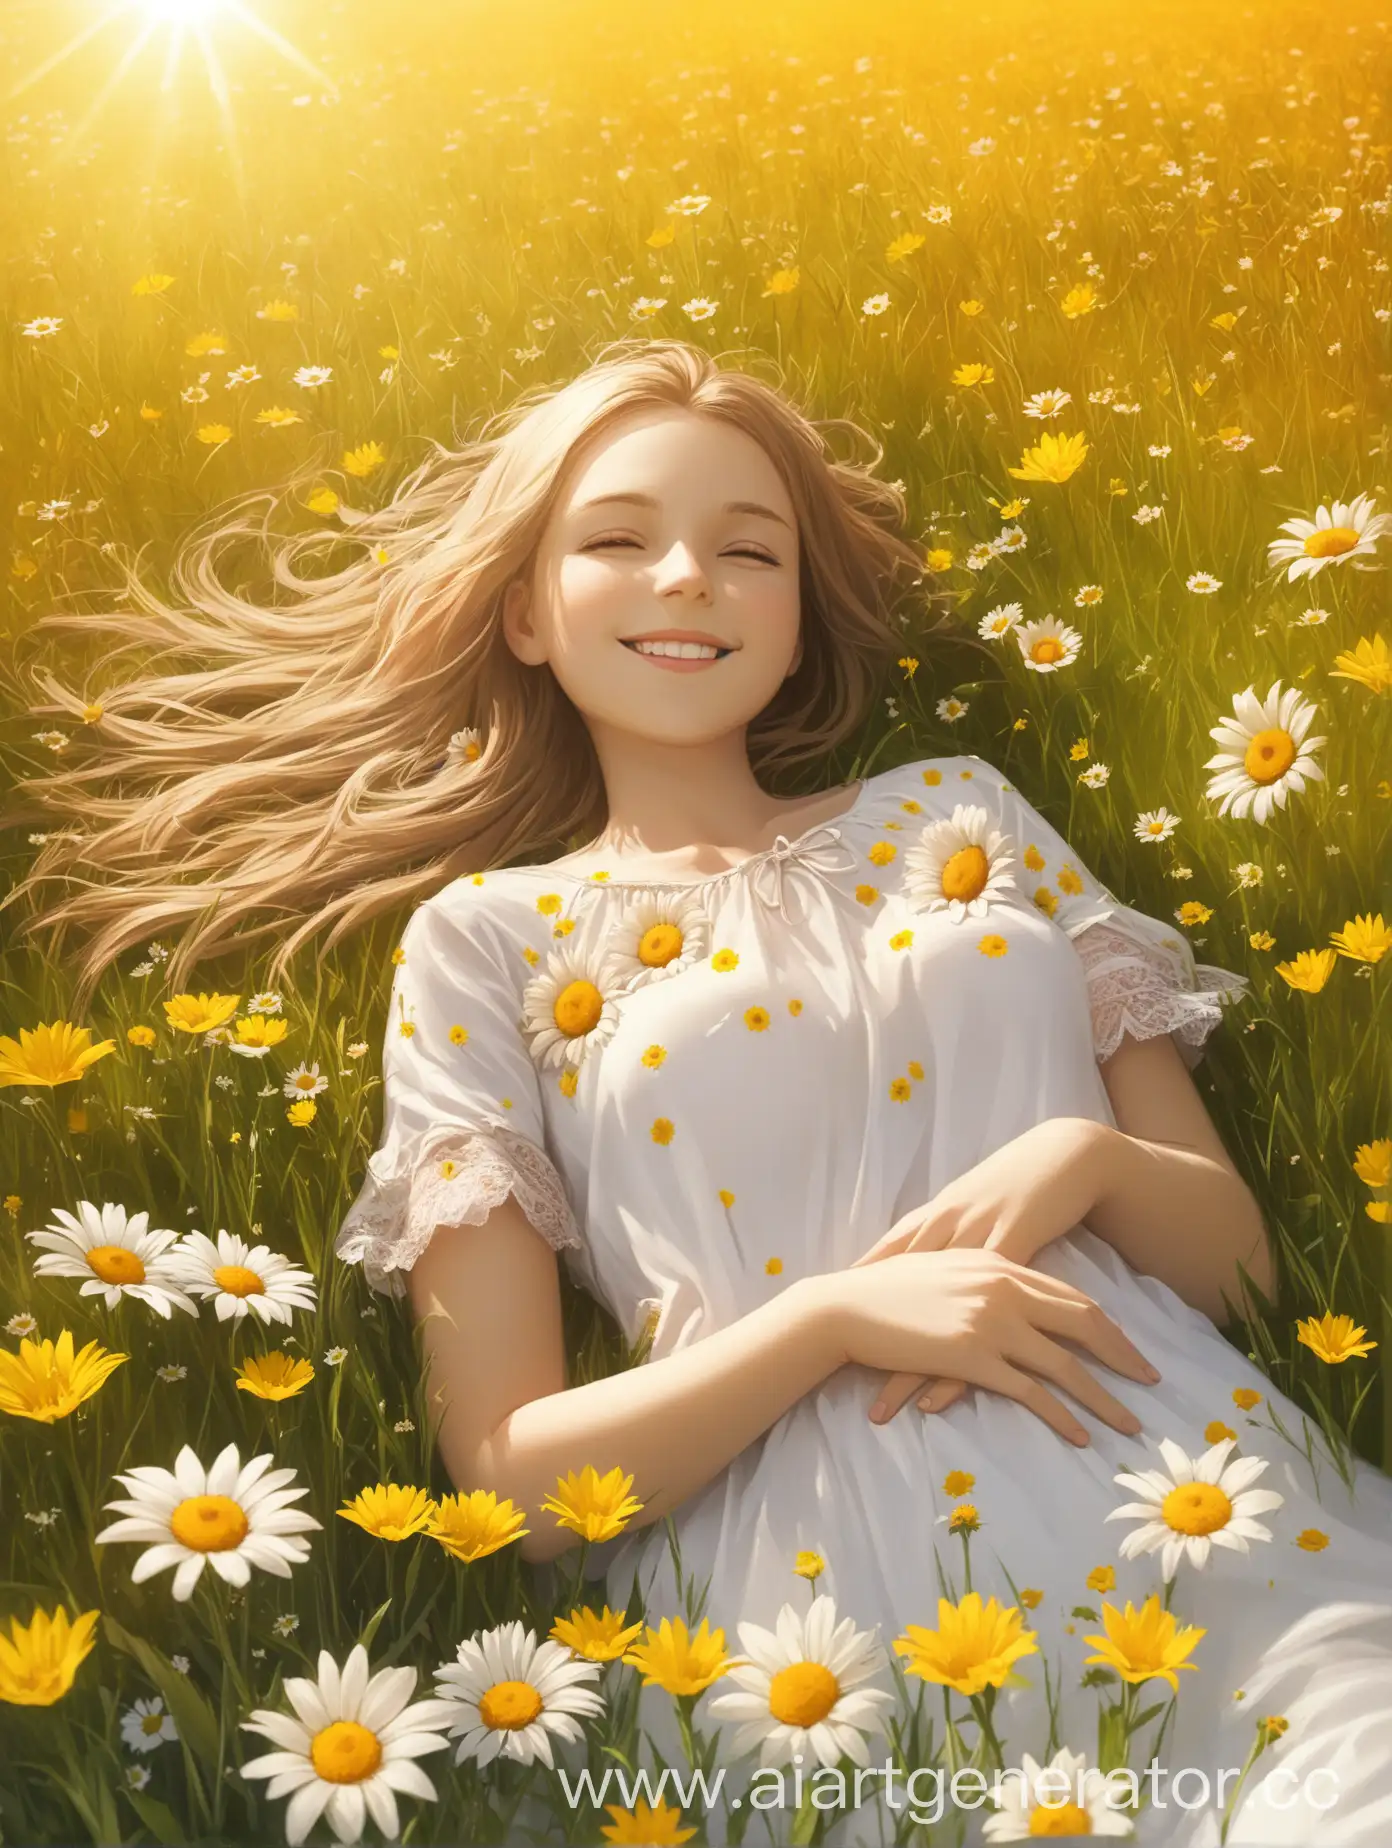 Девушка лежит в поле. вокруг нее цветы. Солнце. Улыбка. ЛЕто. 

